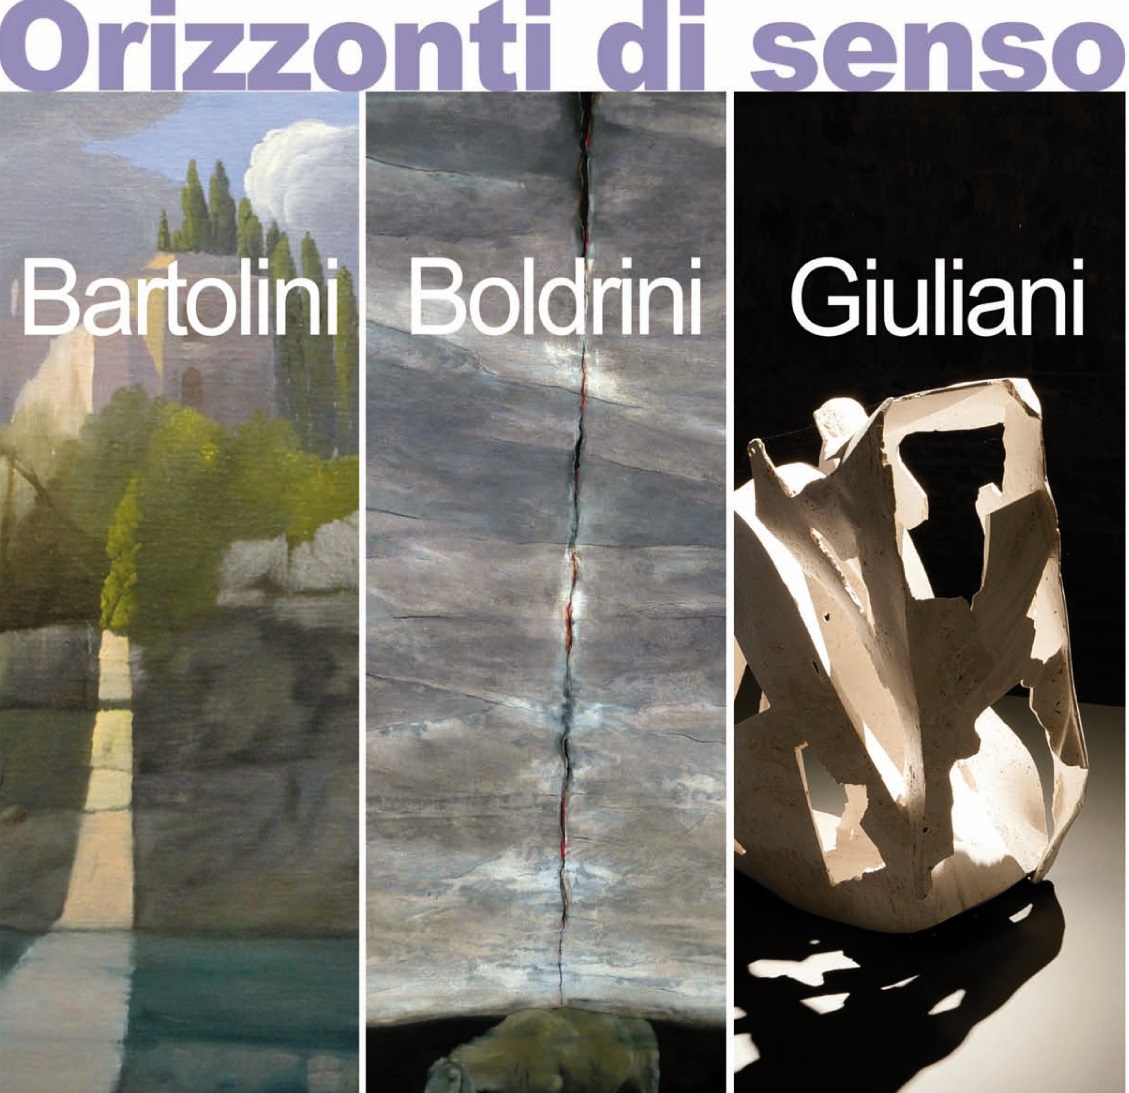 In Palazzina gli "Orizzonti di senso" di Bartolini, Boldrini e Giuliani